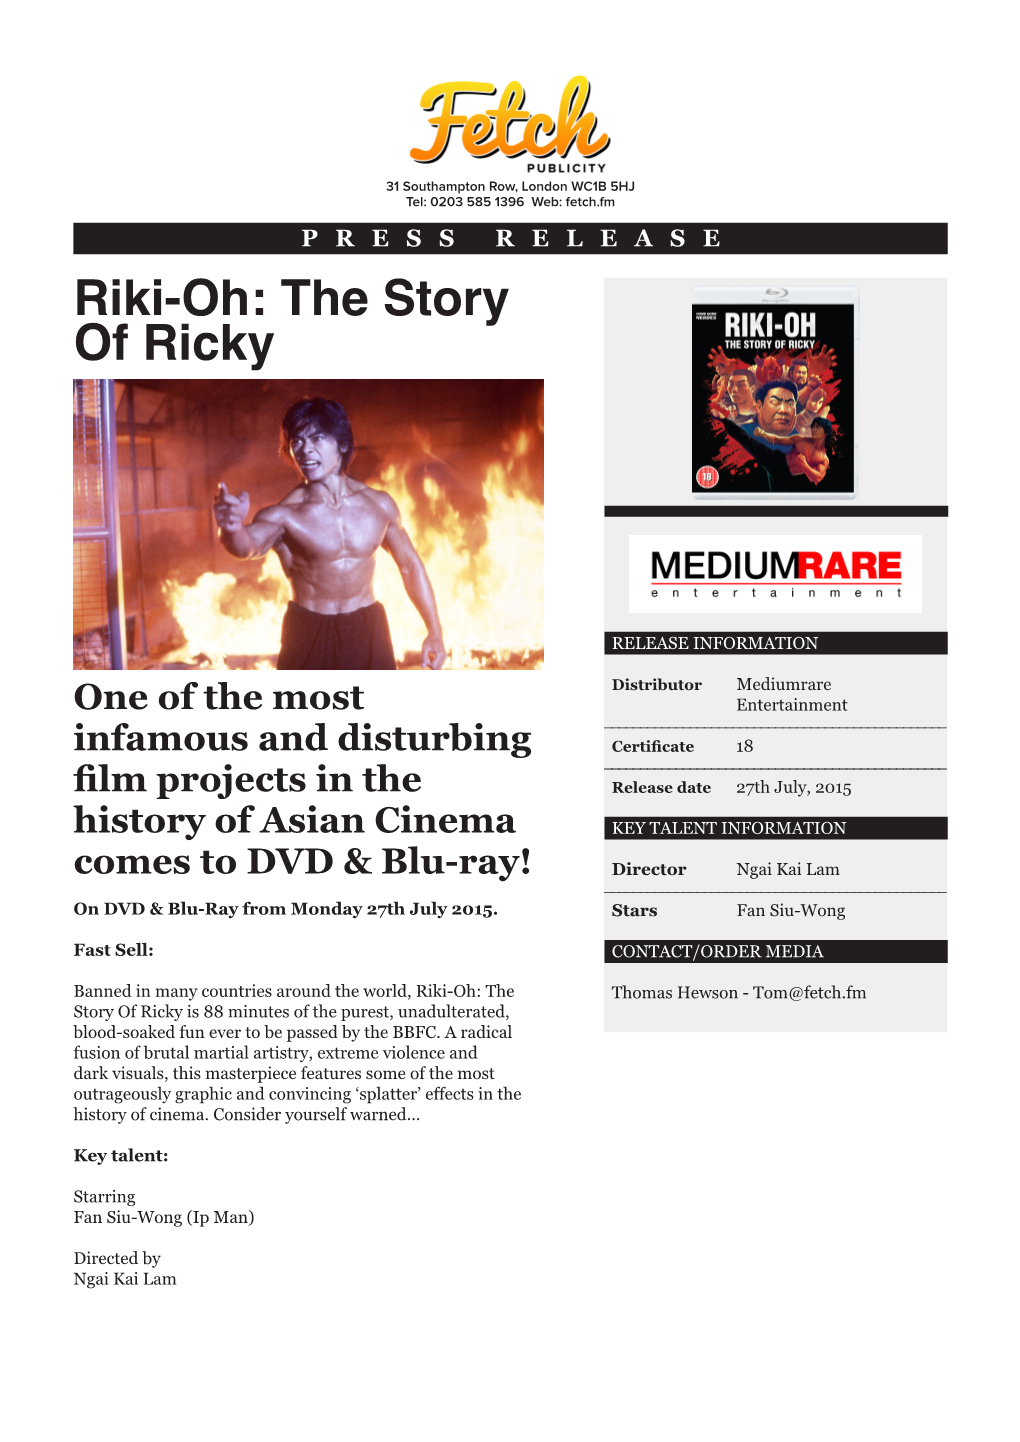 Riki-Oh: the Story of Ricky